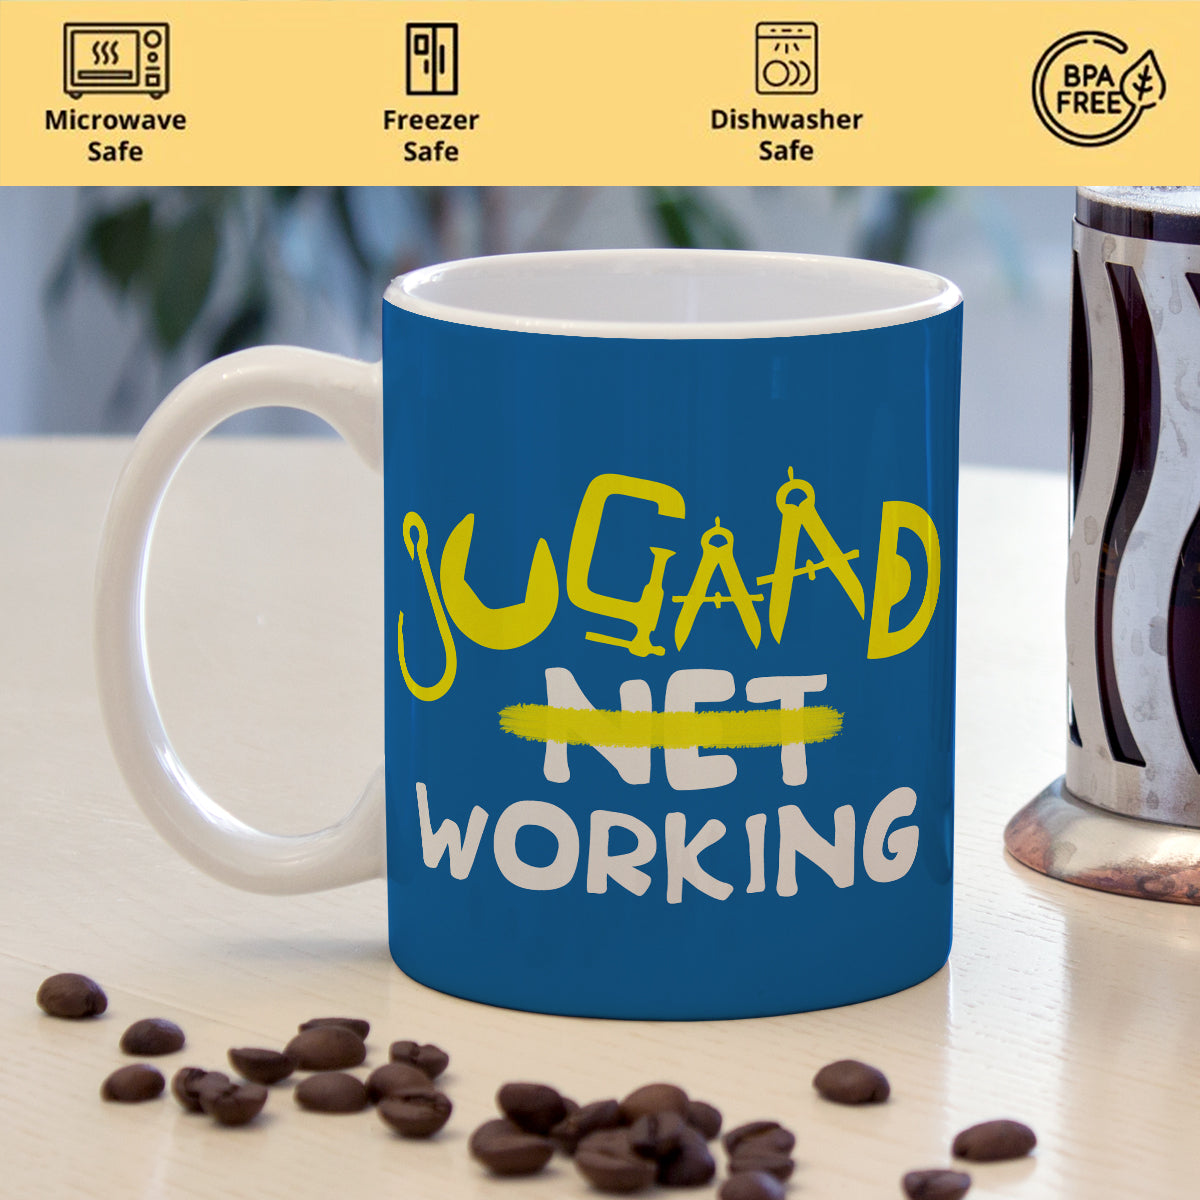 The Jugaad Mug